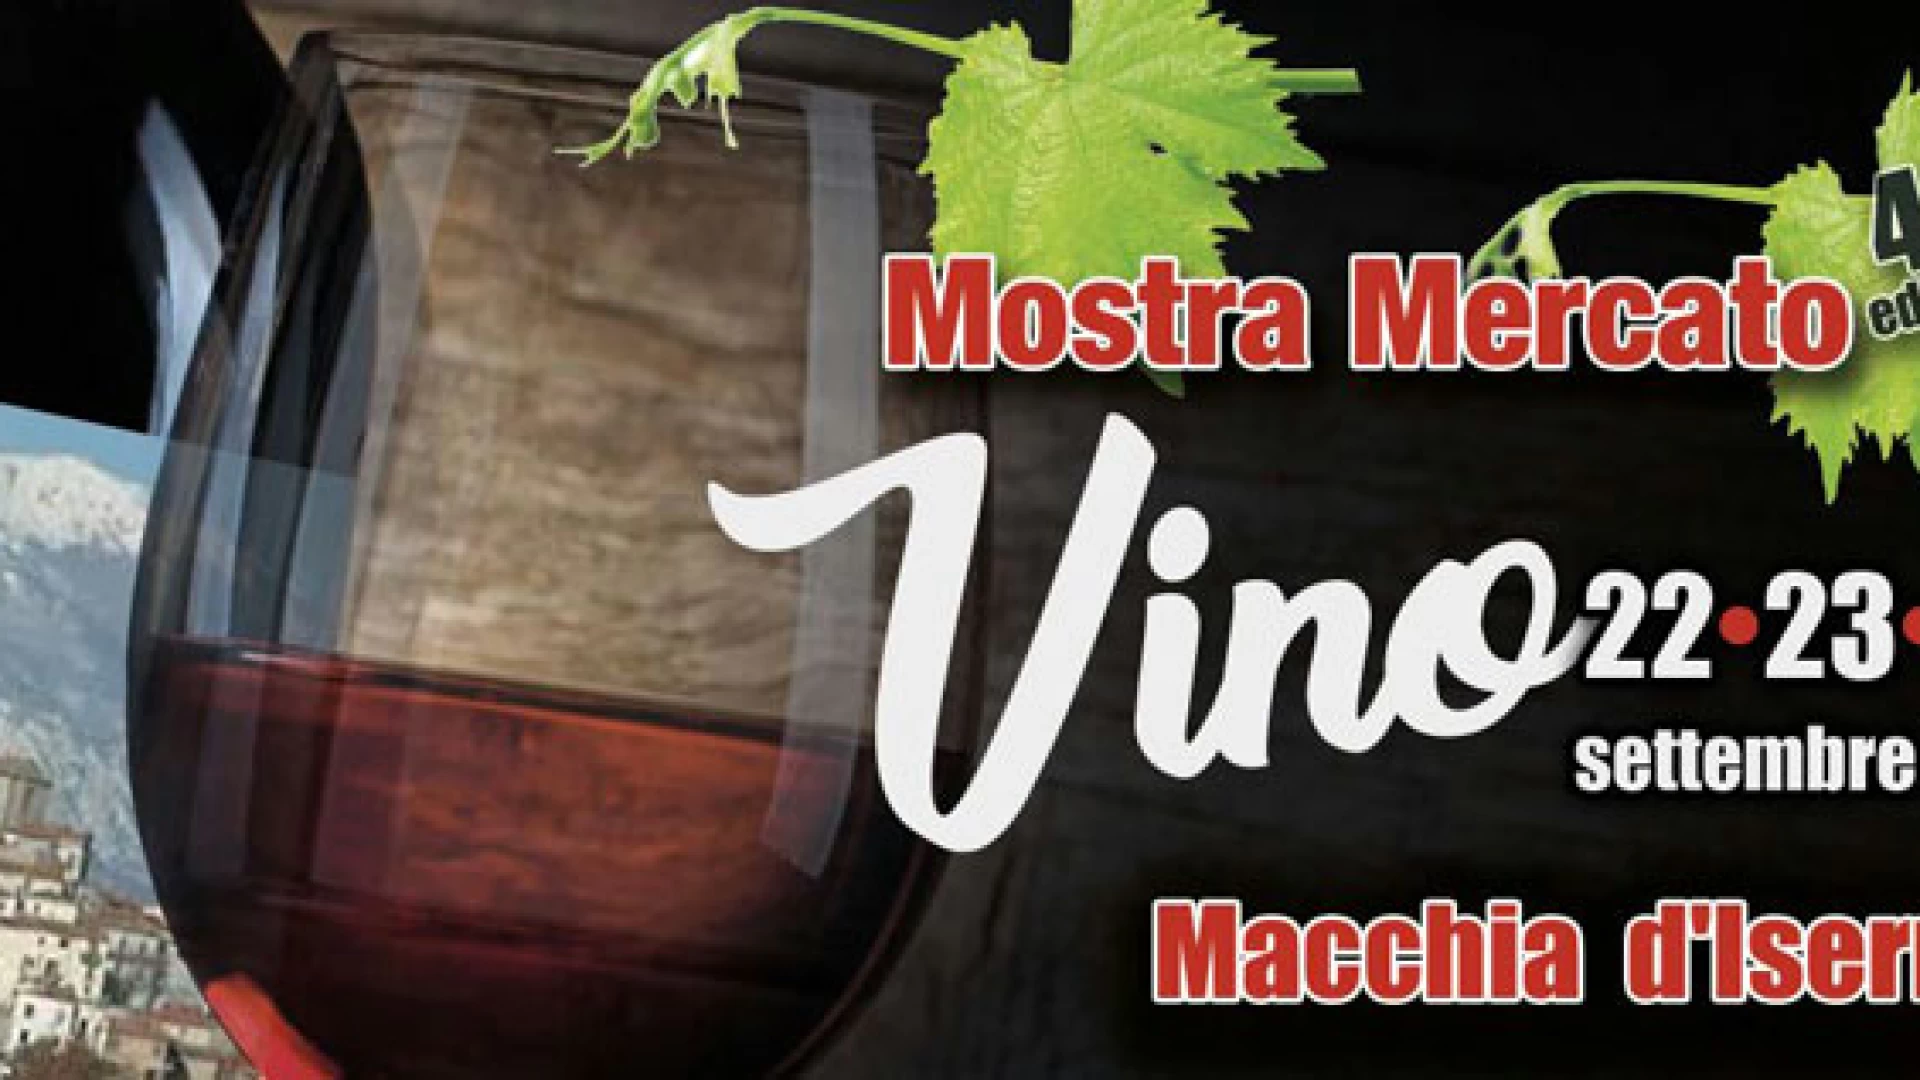 Macchia d’Isernia: nel fine settimana la mostra mercato del Vino. Appuntamento giunto alla sua 44esima edizione.